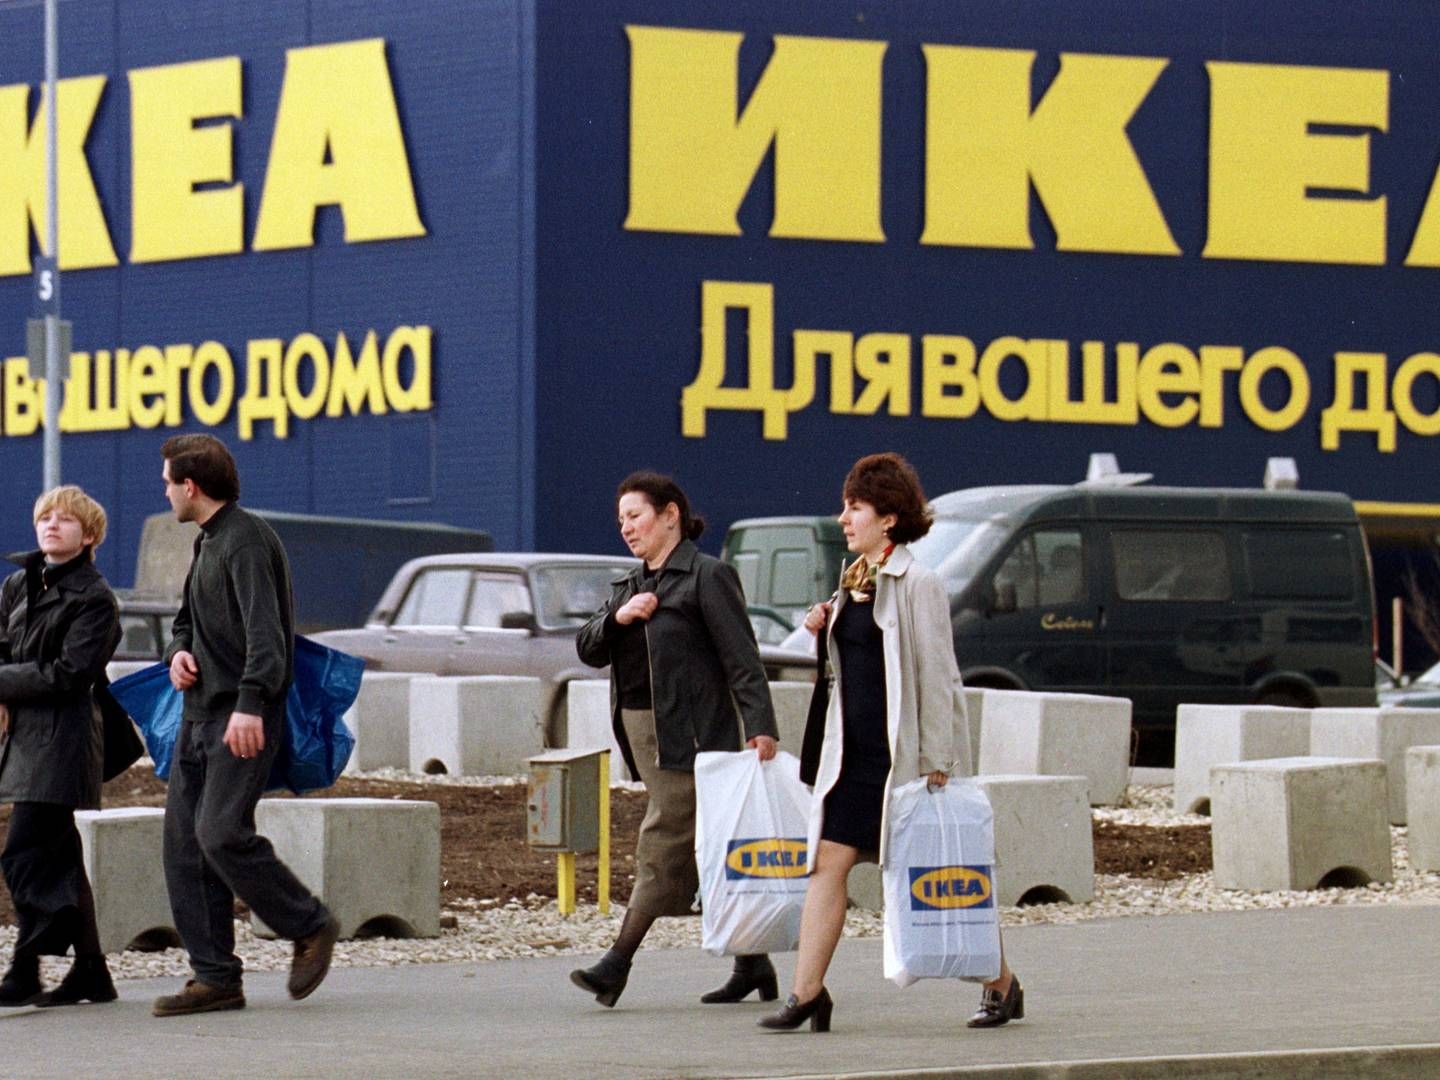 Rusland var Ikeas 10. største marked inden lukningen. Nu skal fanger i fængselskolonier lave møbler.